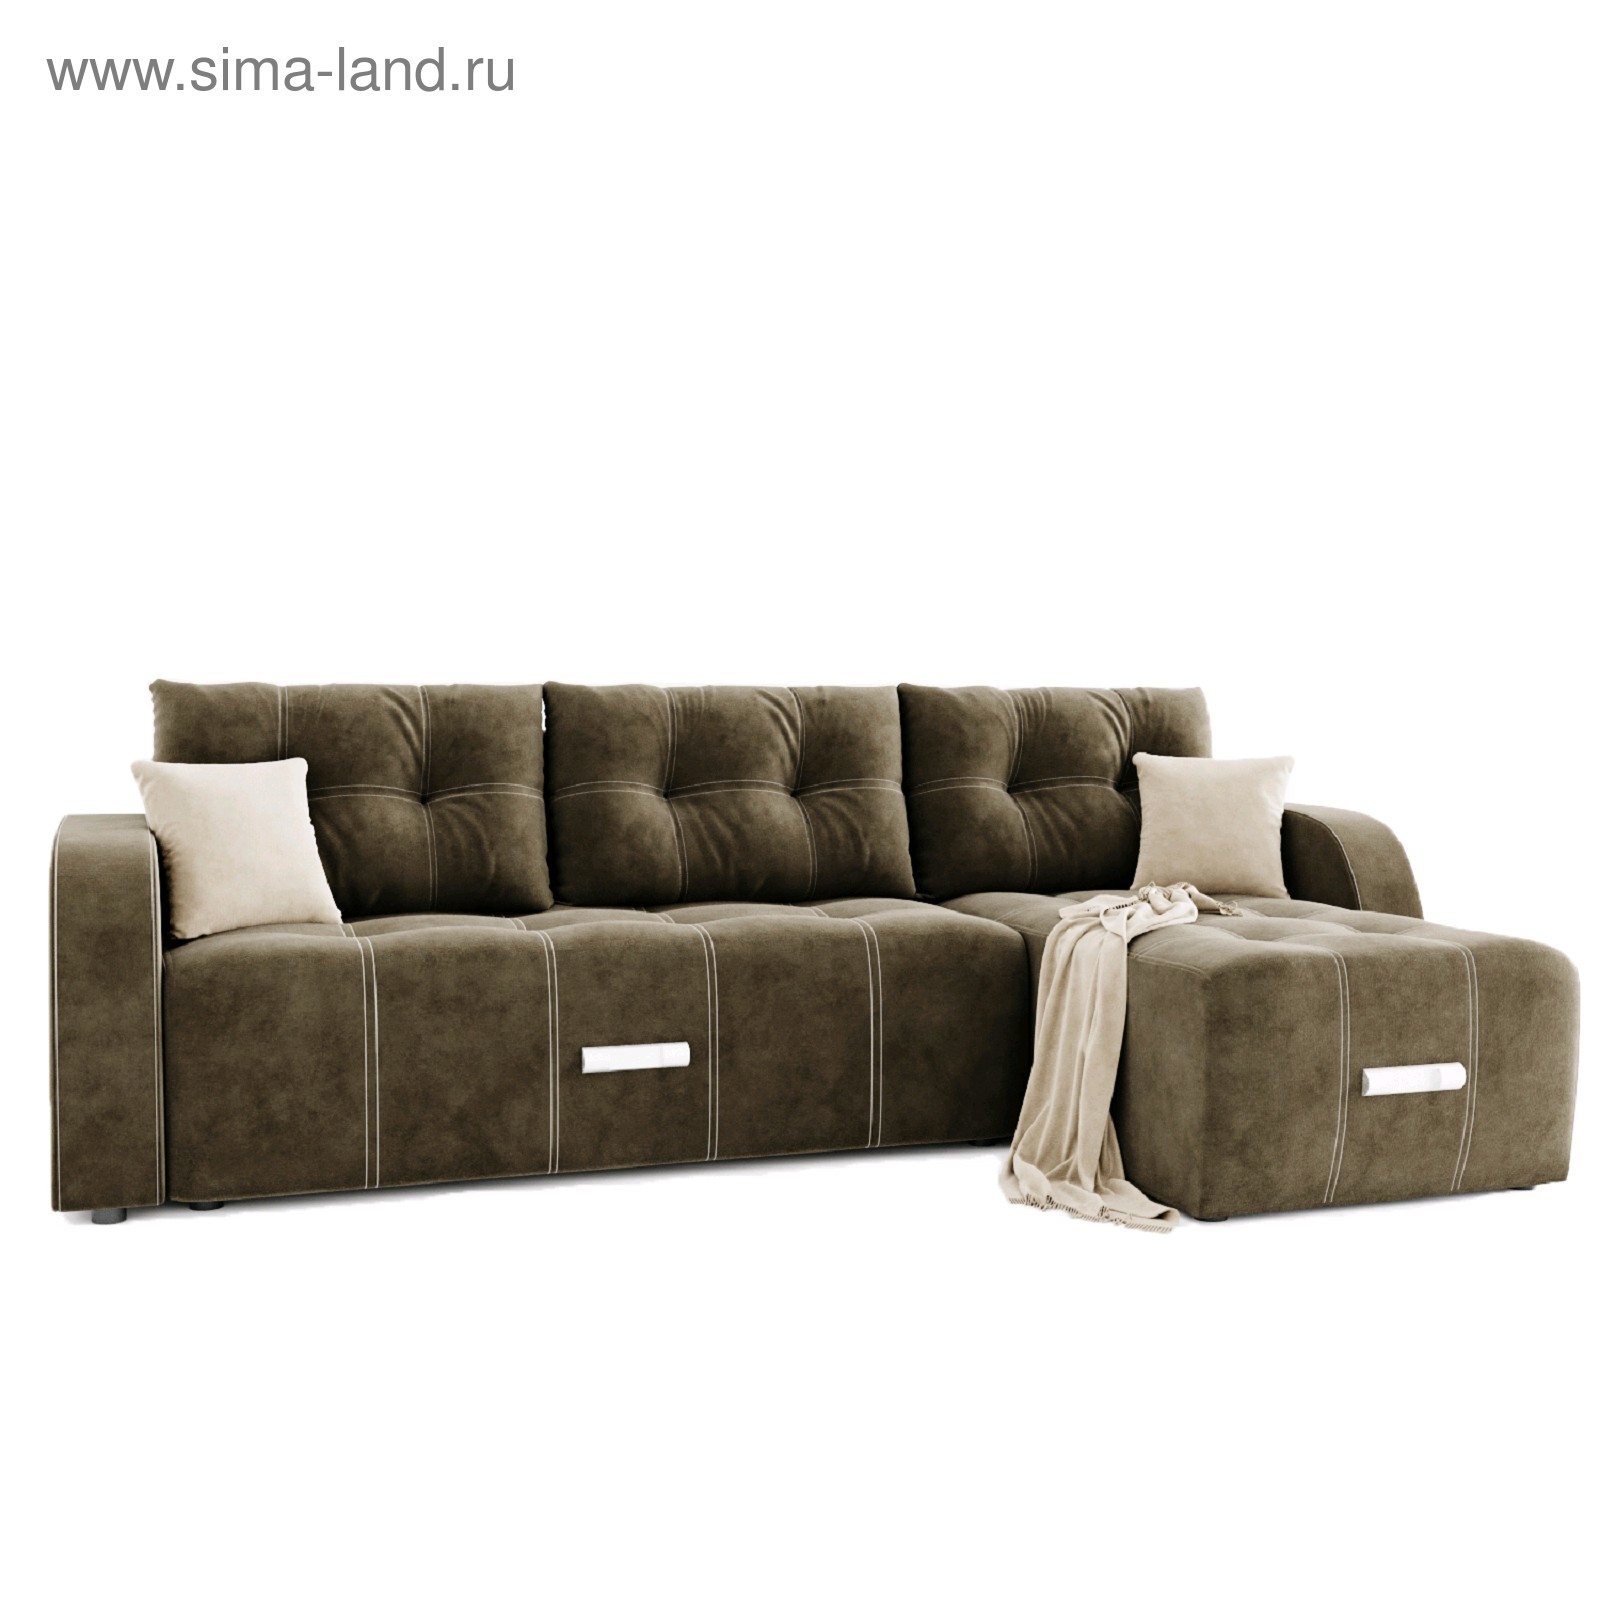 Купить Угловой диван «Нью-Йорк», угол правый, пантограф, велюр, цвет селфи03, подушки селфи 01 (4782022) в Крыму, цены, отзывы, характеристики